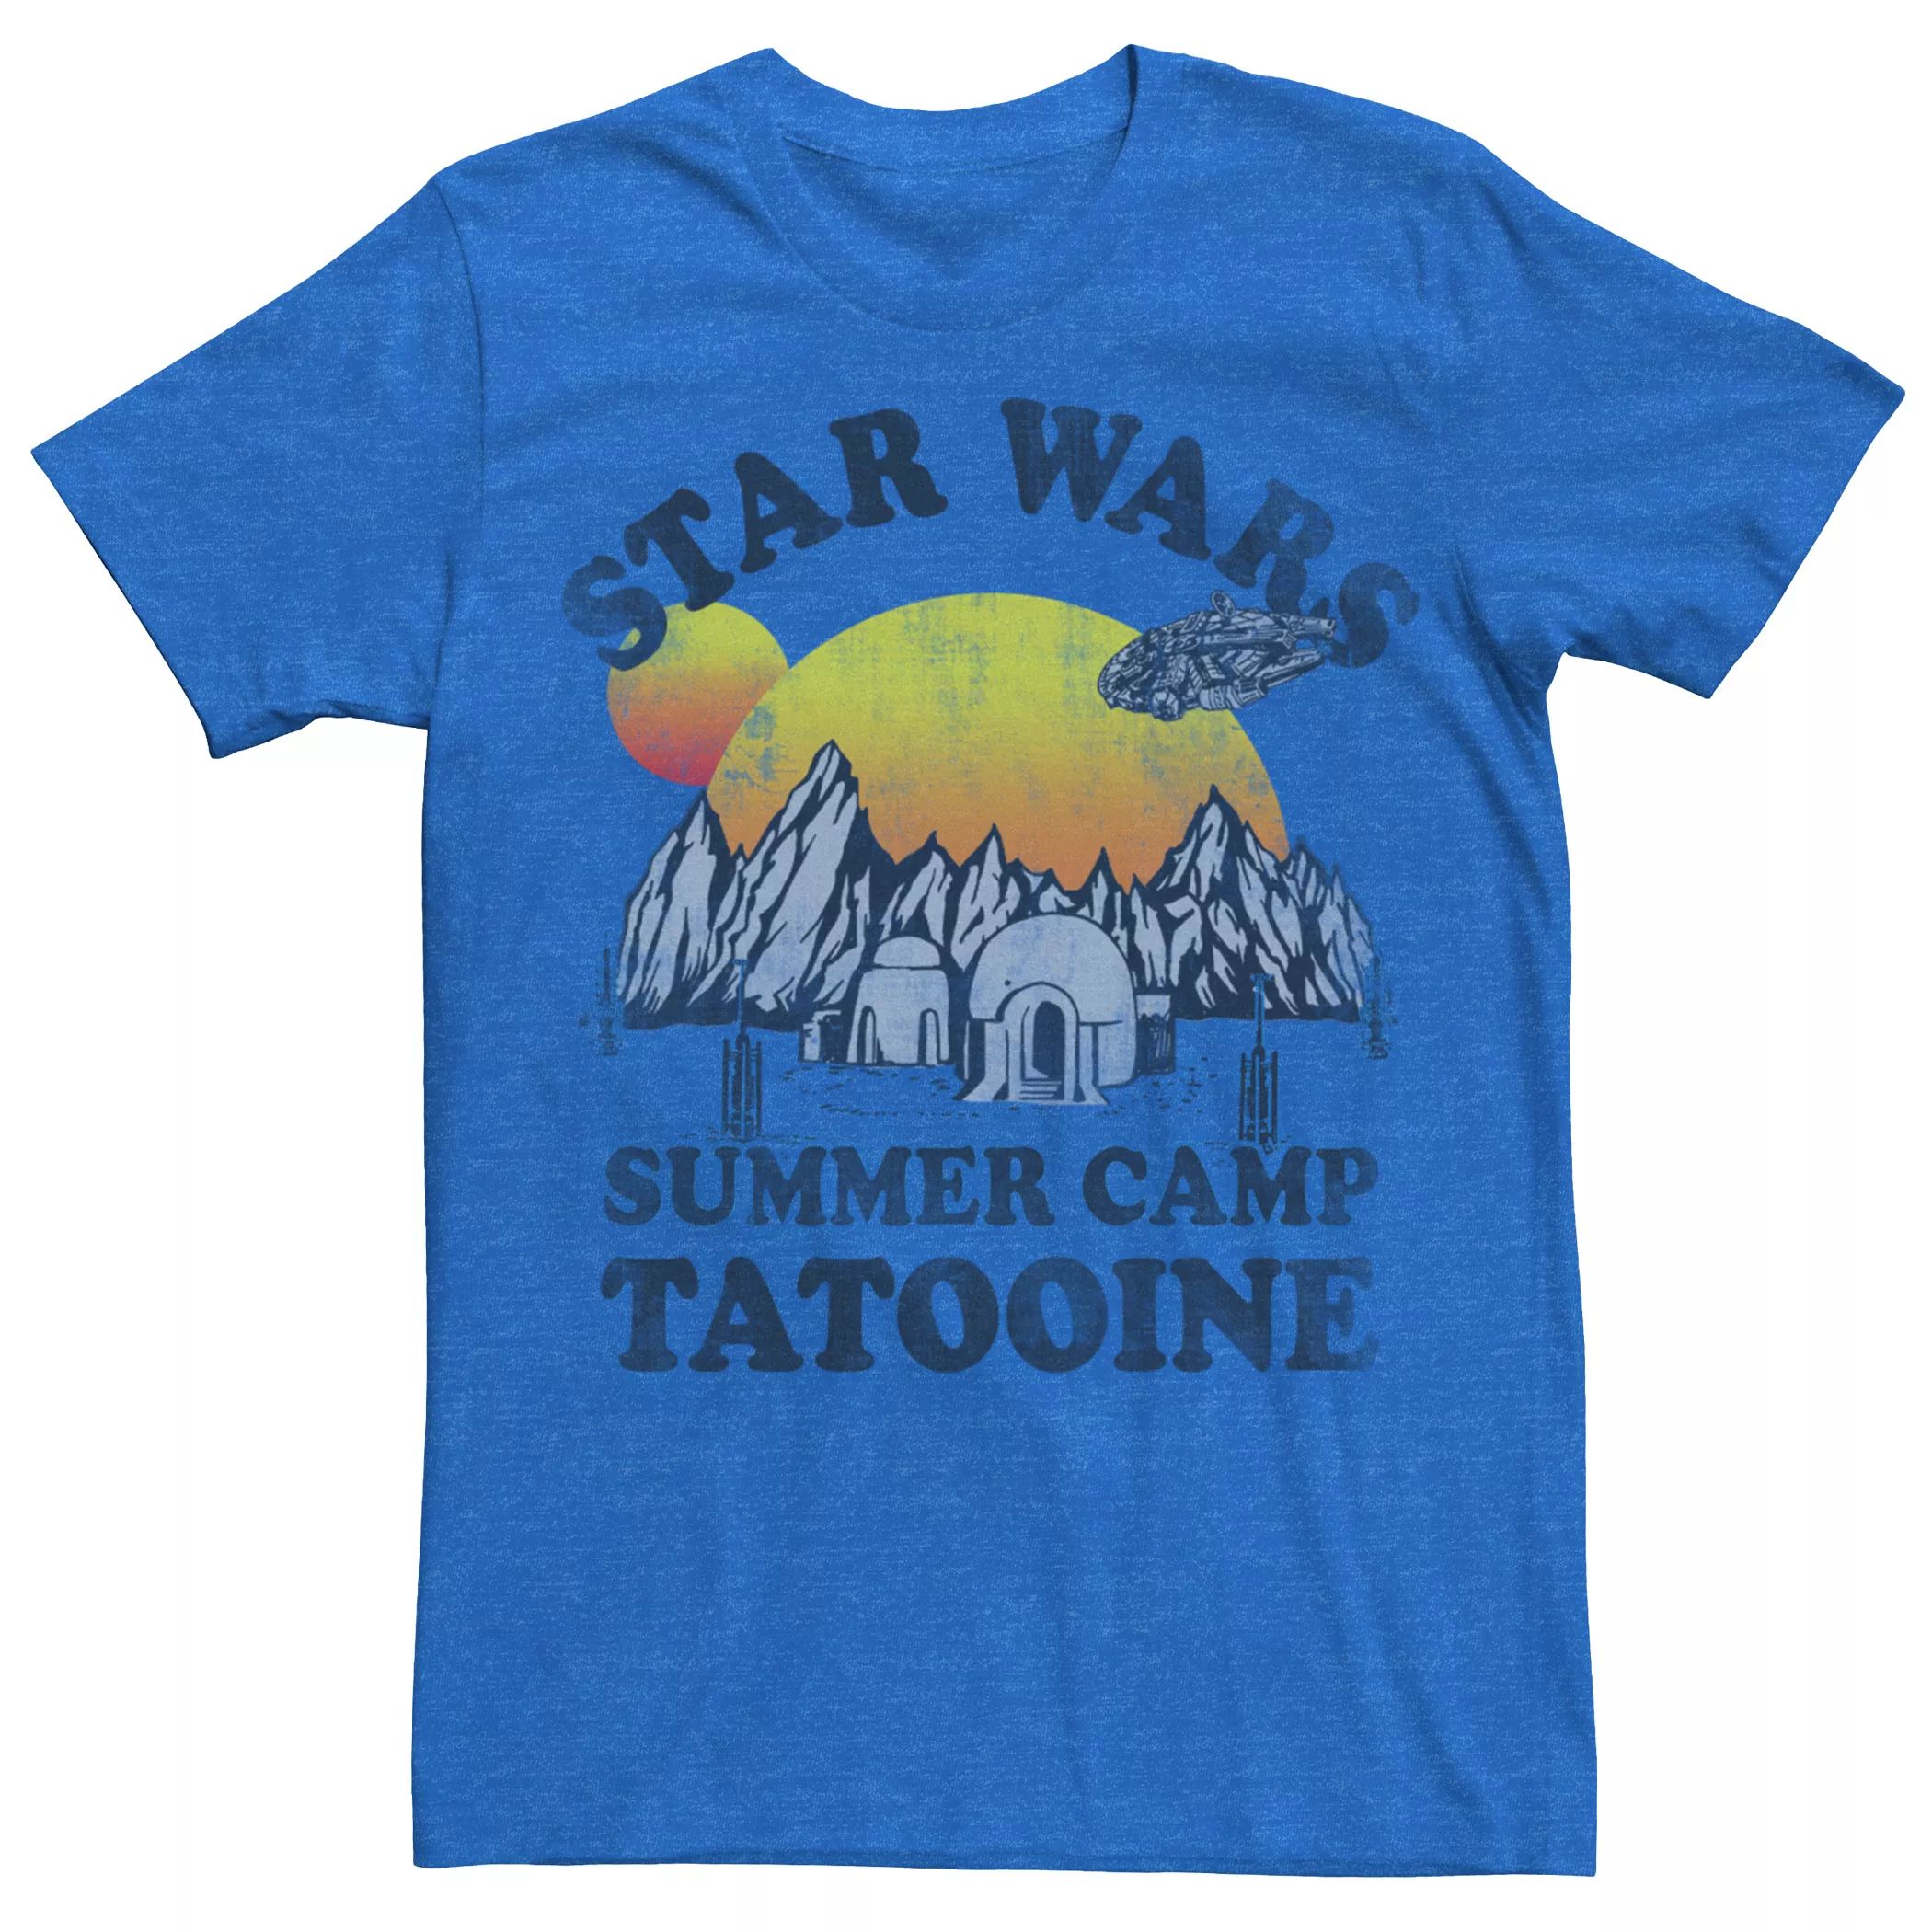 Мужская футболка летнего лагеря «Звездные войны Татуин» Star Wars